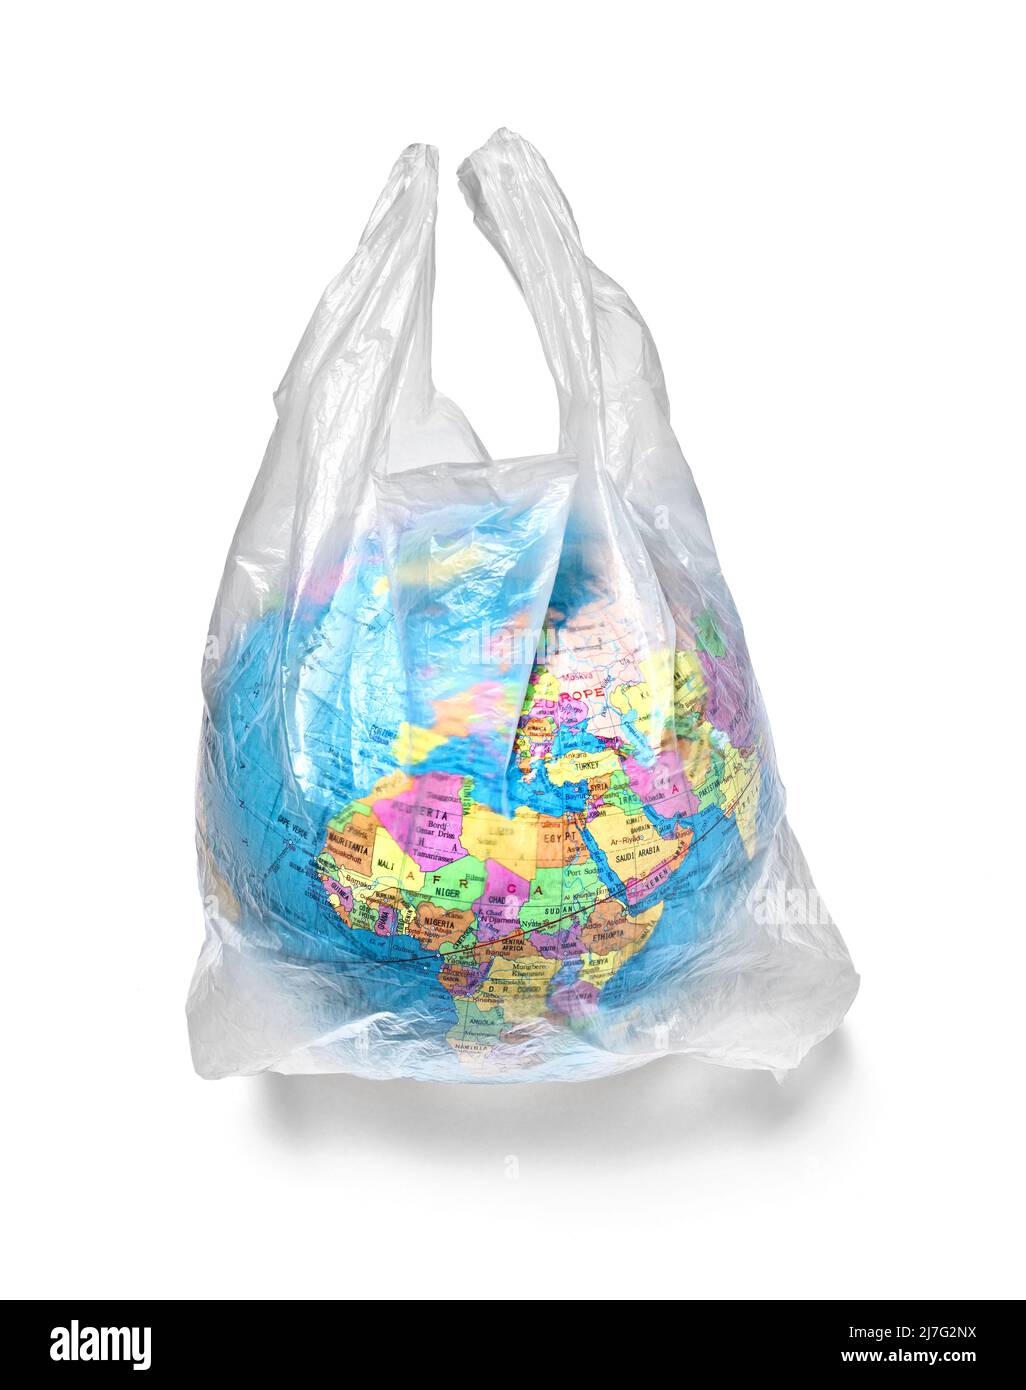 terre globe plastique sac pollution écologie environnement planète réchauffement climatique Banque D'Images